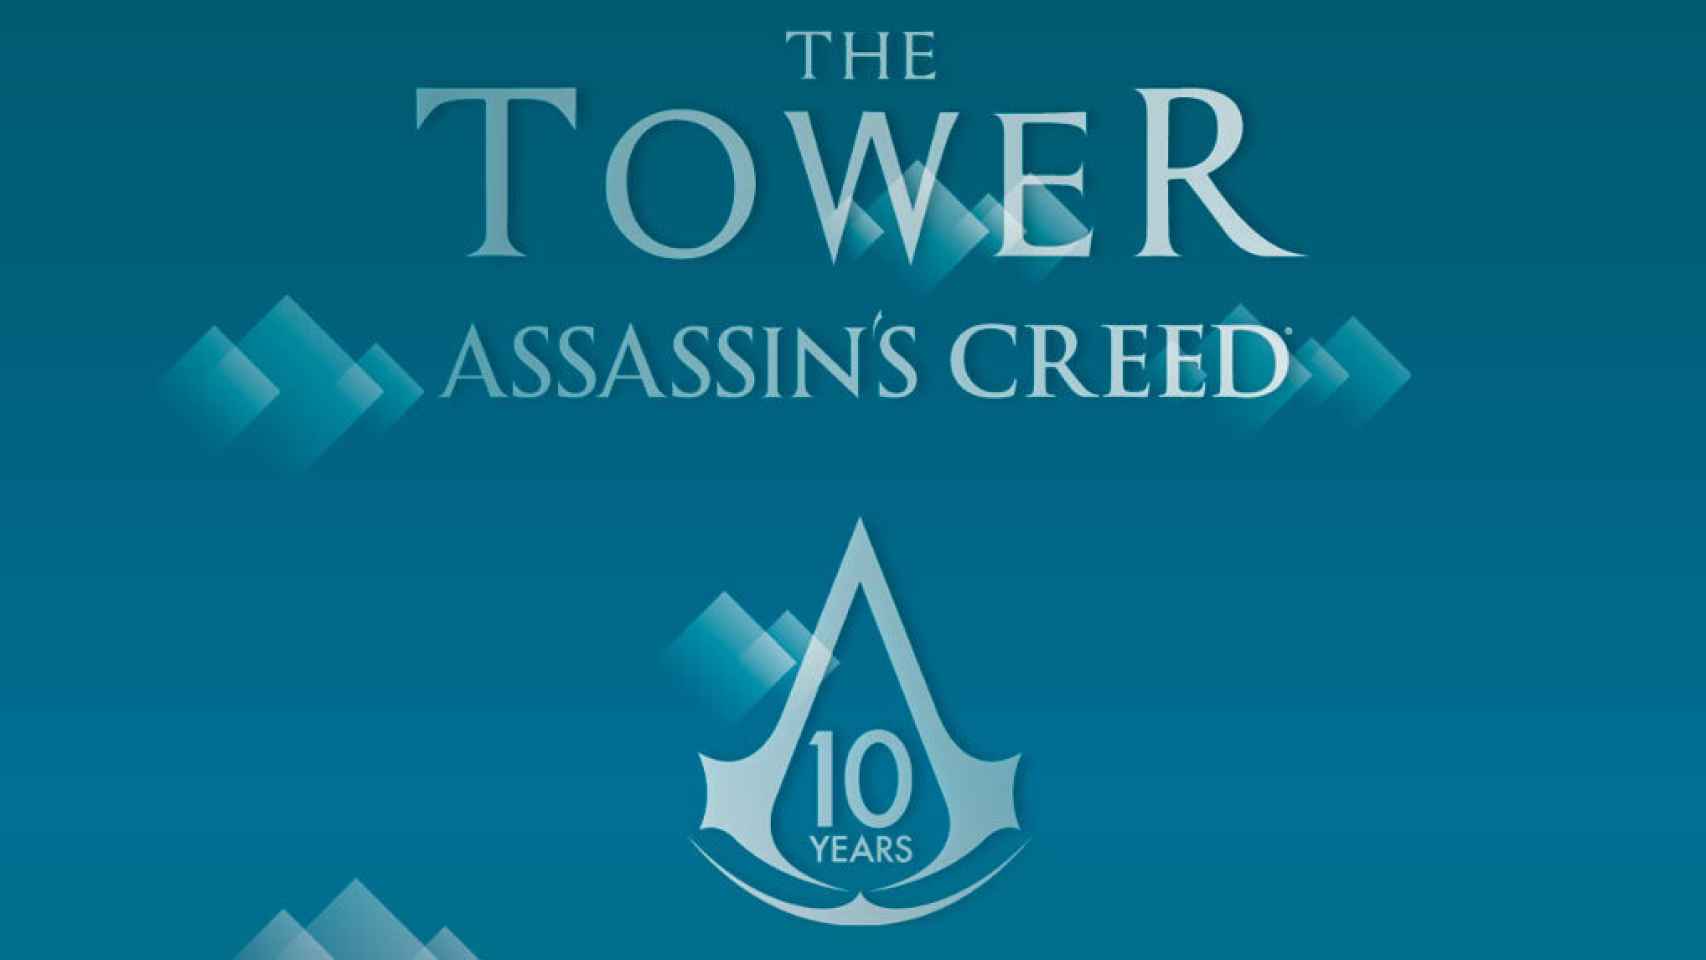 Assasin’s Creed celebra su aniversario con este adictivo juego Android